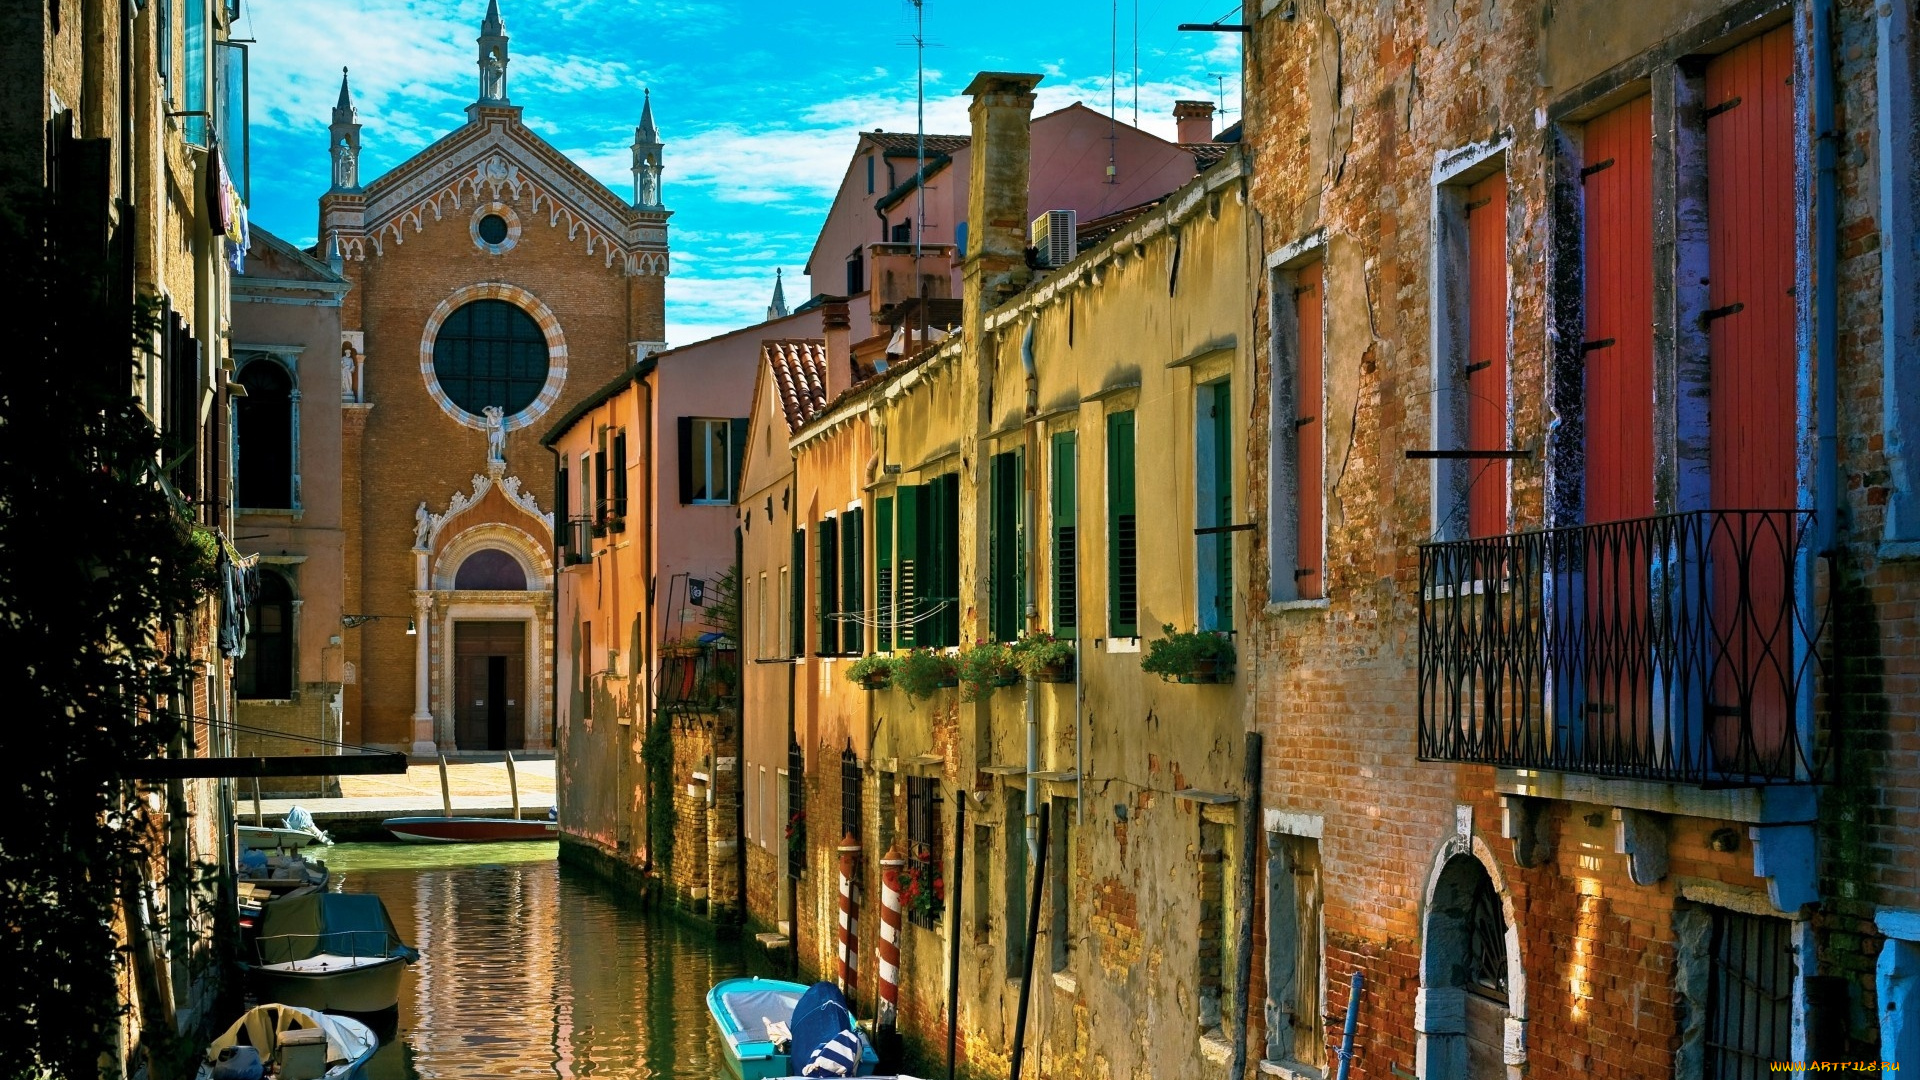 города, венеция, , италия, храм, лодки, здания, дома, канал, улица, венеция